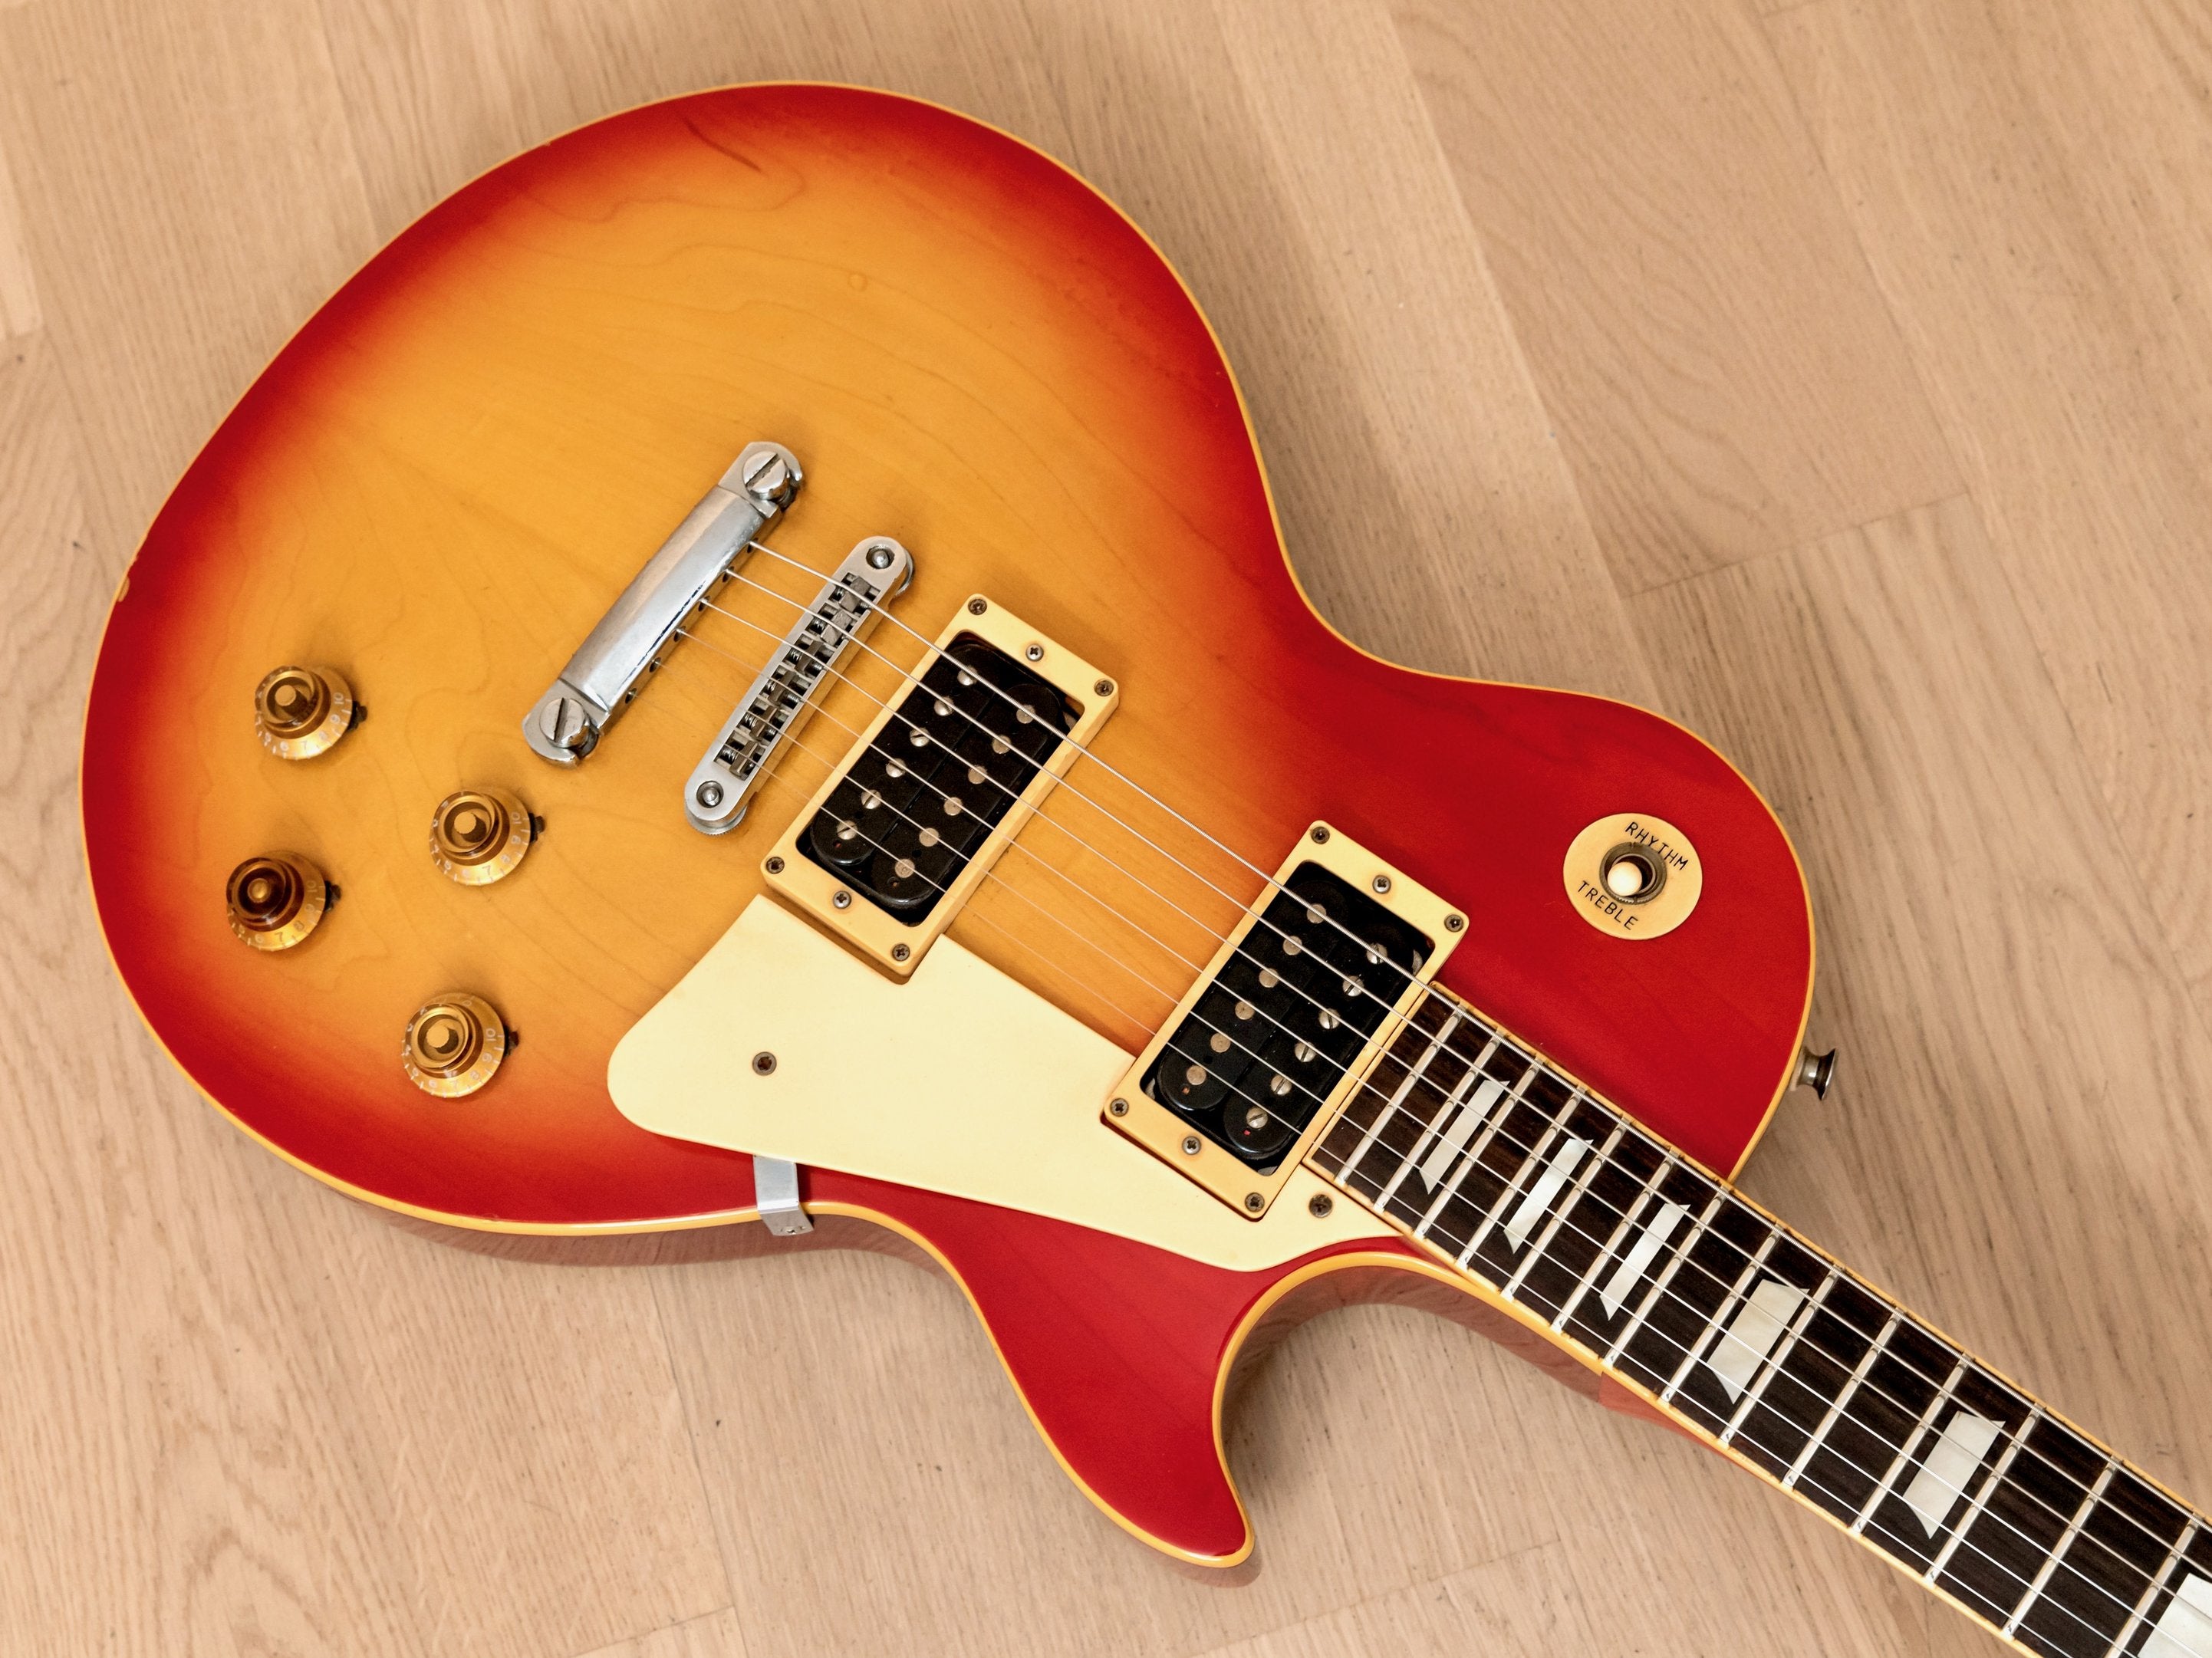 1976 Greco EG900 Standard Vintage Carved Top Electric Guitar Cherry Sunburst, Japan Fujigen